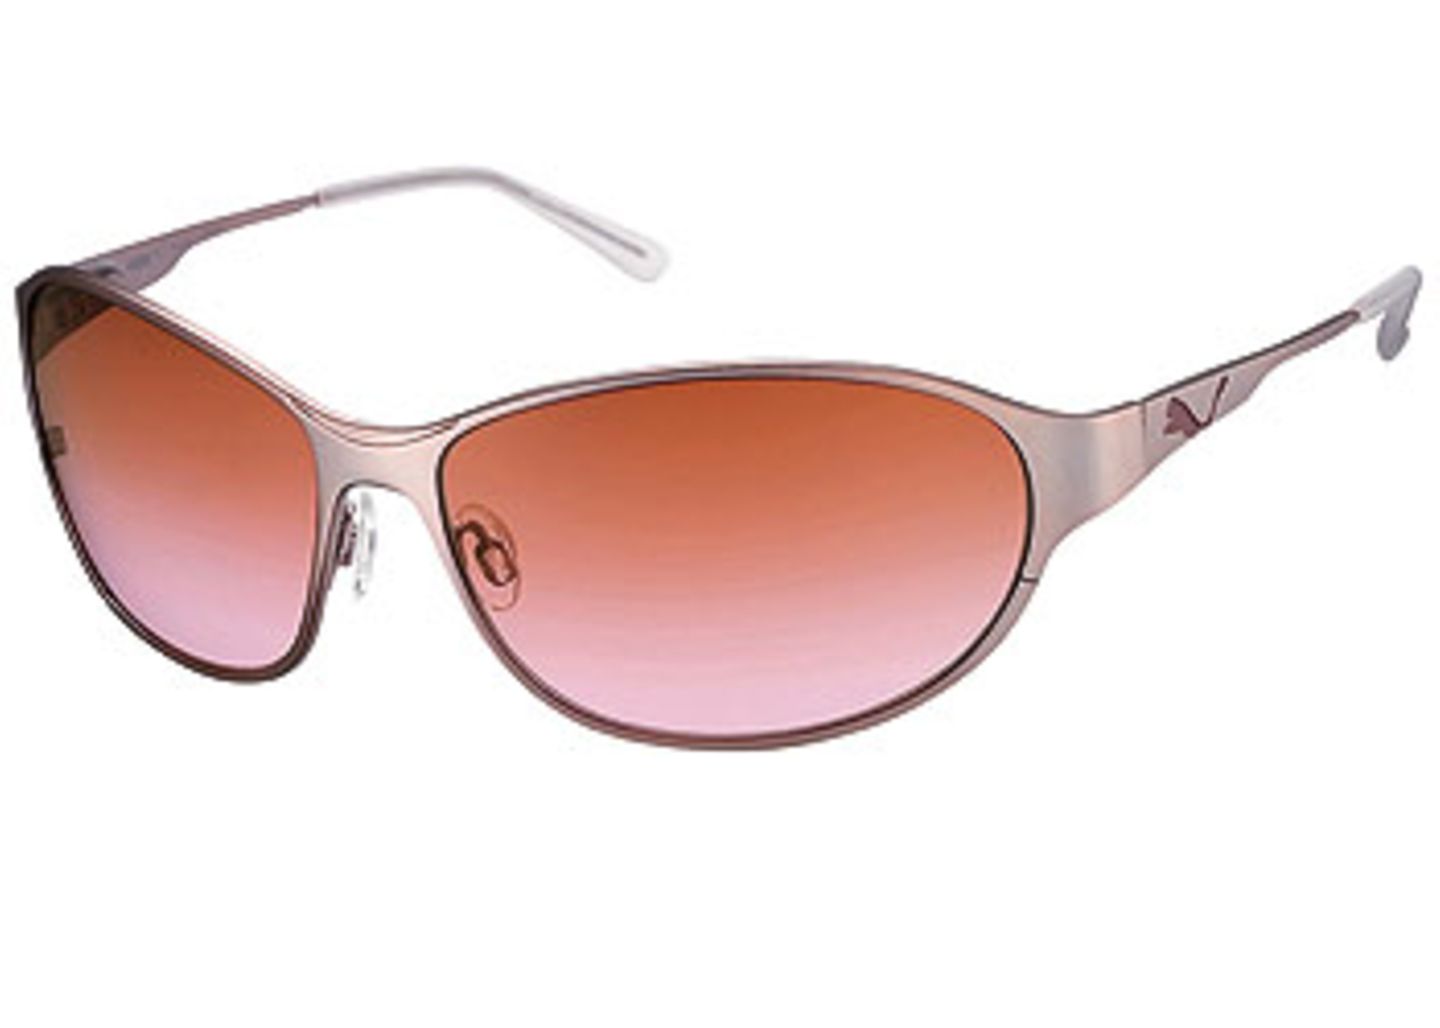 Schnittige Brille mit Metalfassung und orangenen Gläsern; 139,00 Euro; von Puma